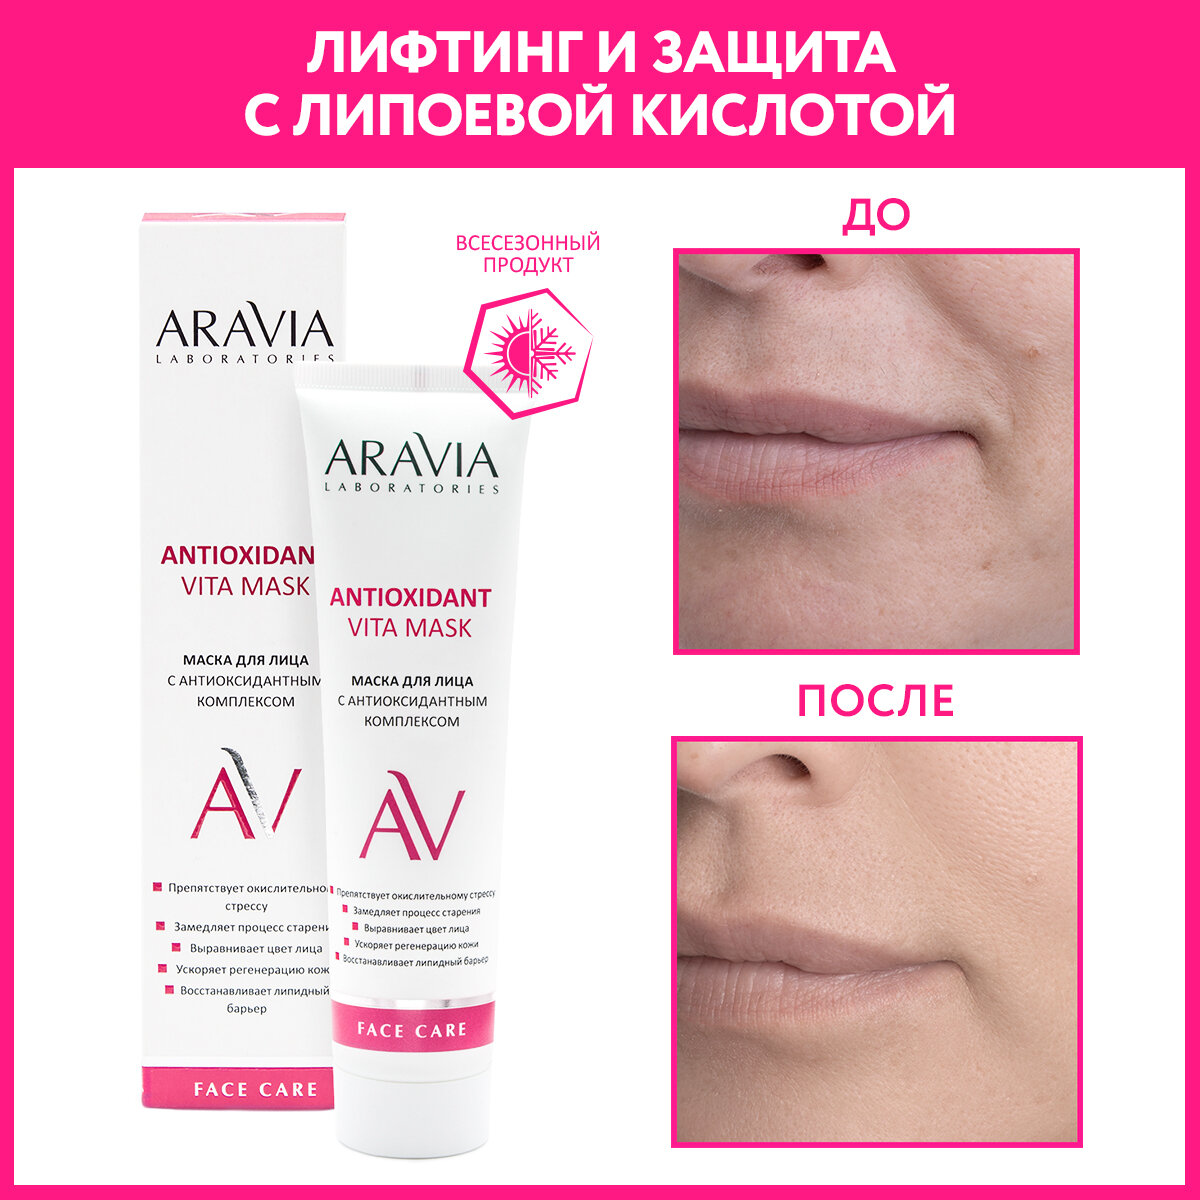 Маска ARAVIA Laboratories для лица с антиоксидантным комплексом Antioxidant Vita Mask, 100 мл